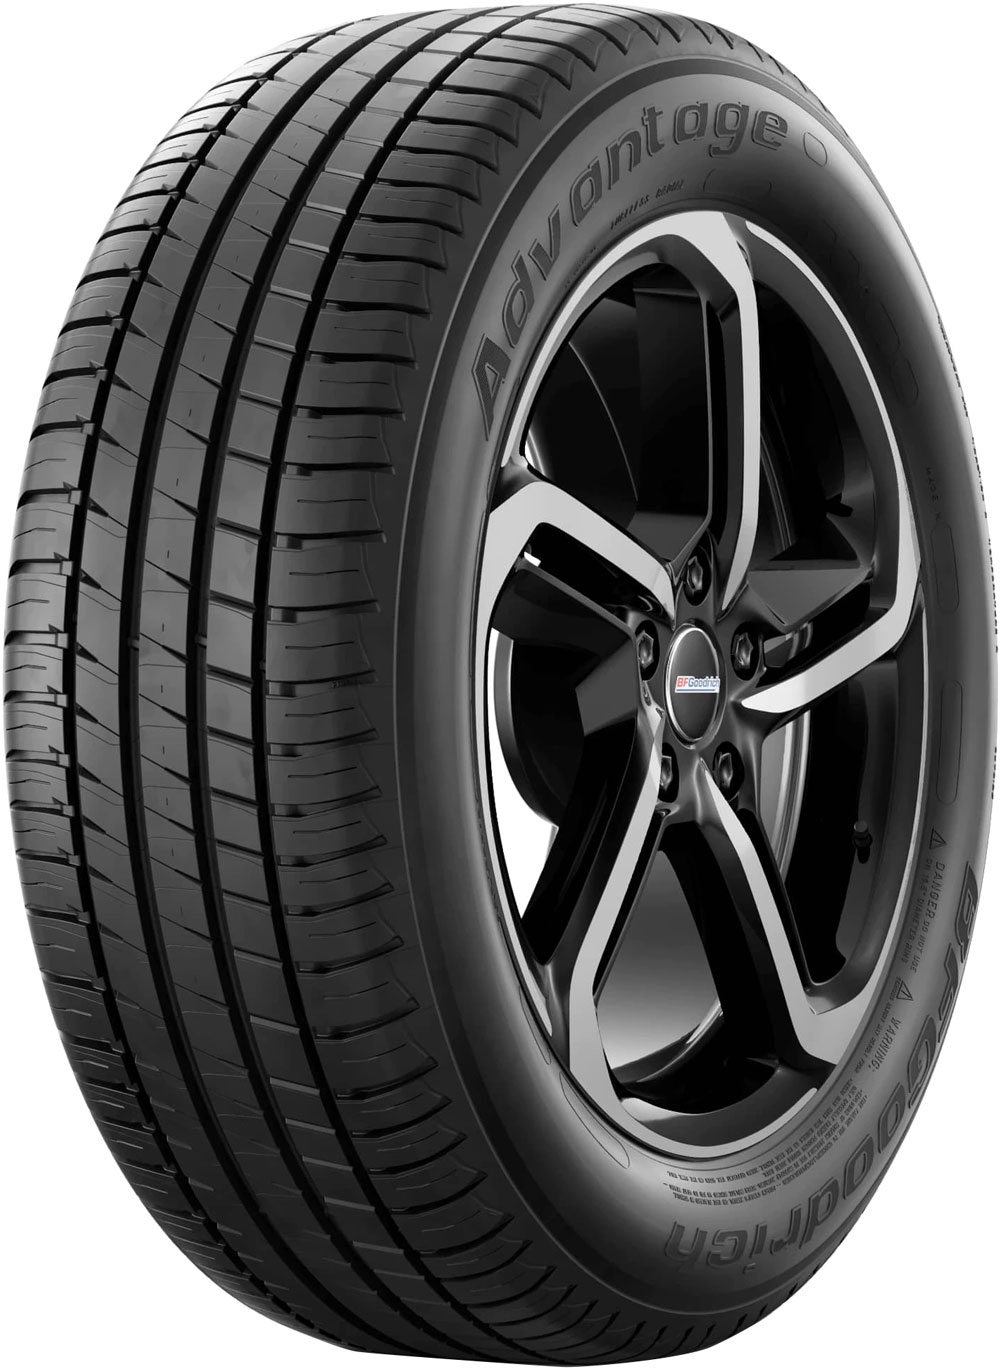 Автомобилни гуми BF GOODRICH ADVANTAGE XL 245/45 R18 100W